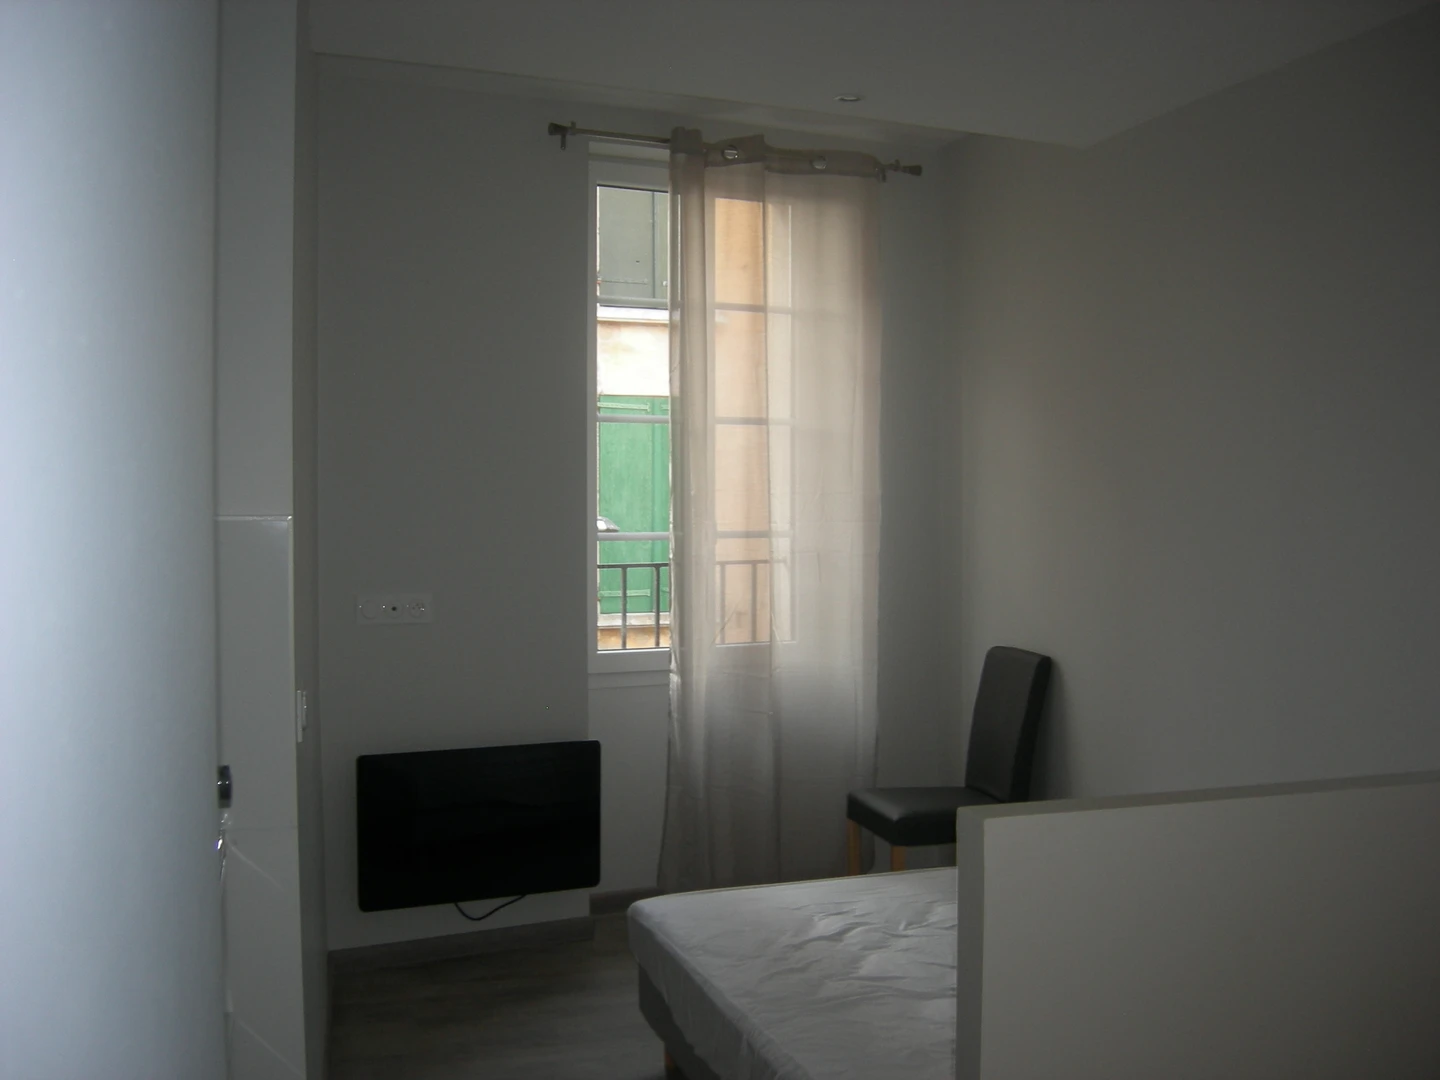 Perpignan de aylık kiralık oda